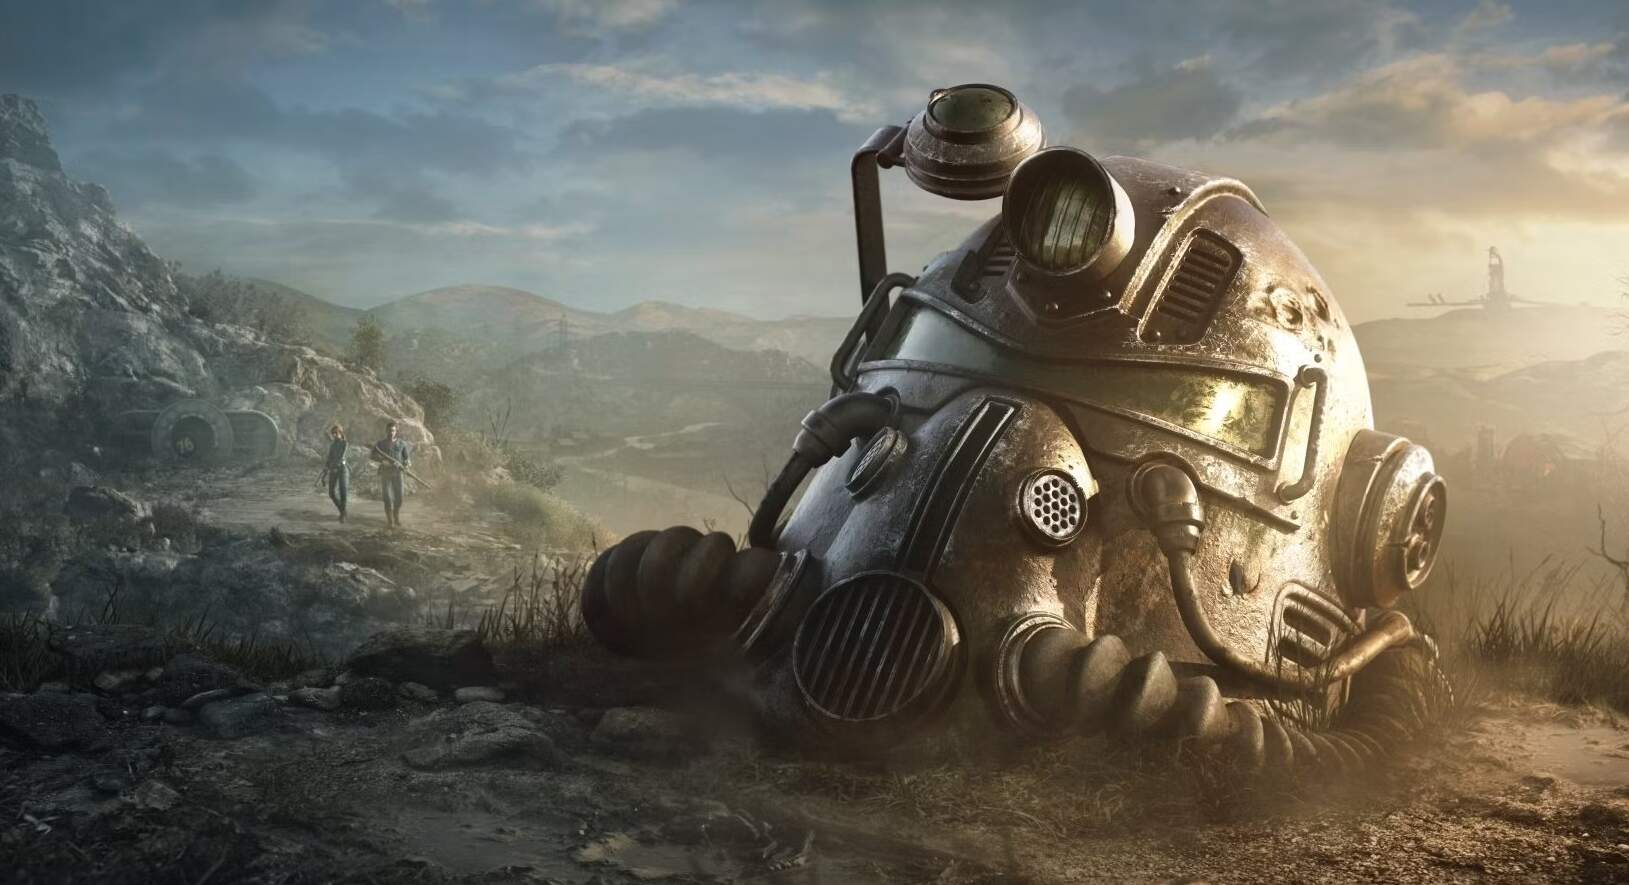 Chronologie der Fallout-Welt, der Spiele und der Fallout-Serie - in welchem Jahr begann die Serie?